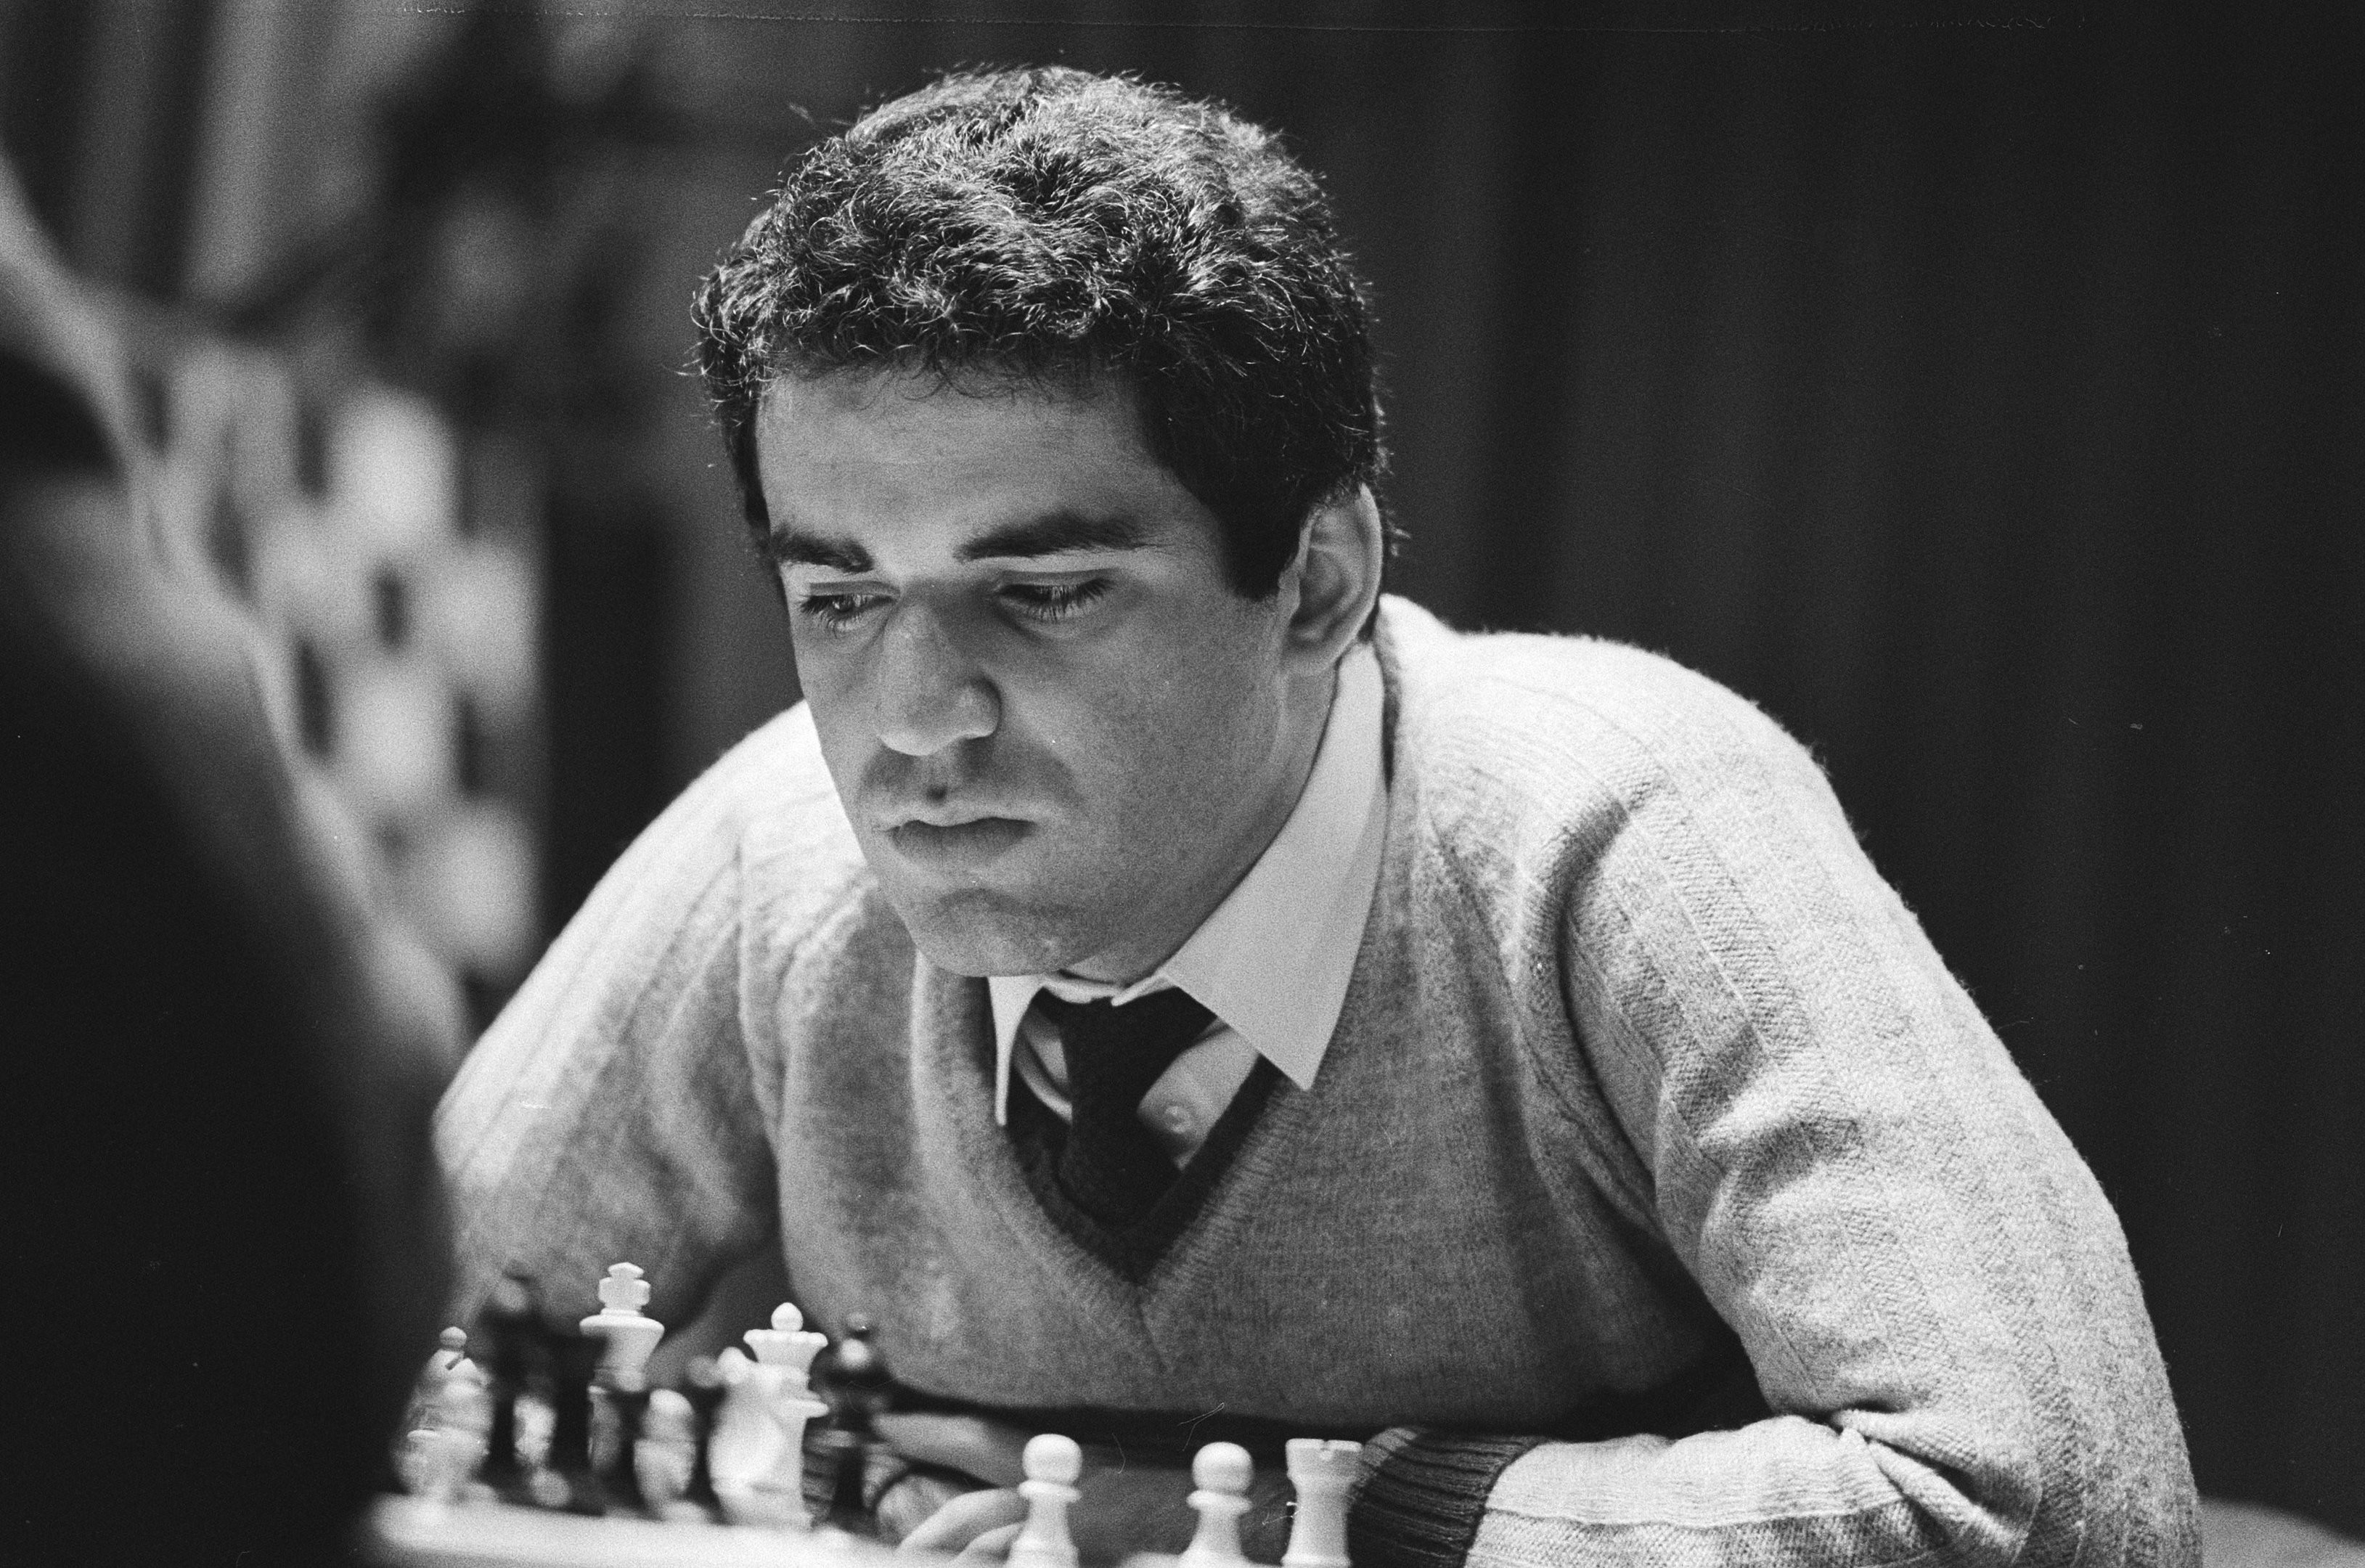 Verdades E Mentiras Sobre Kasparov x Deep Blue: Faça O Teste!